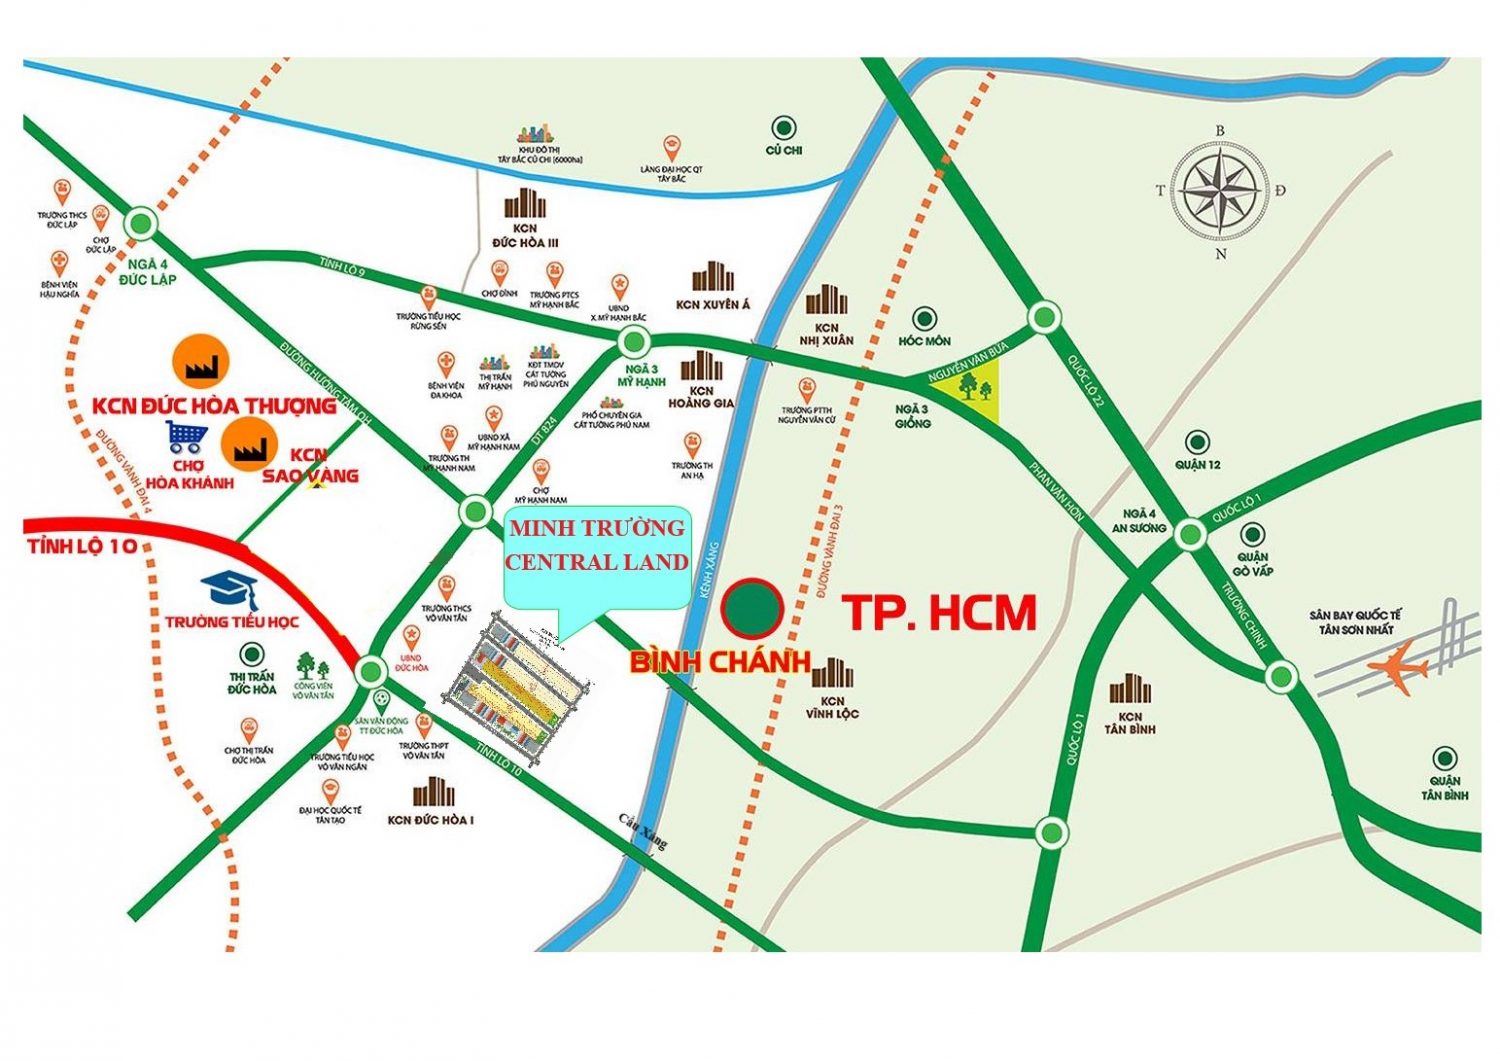 Vị trí dự án Khu dân cư Minh Trường Central Land trên bản đồ